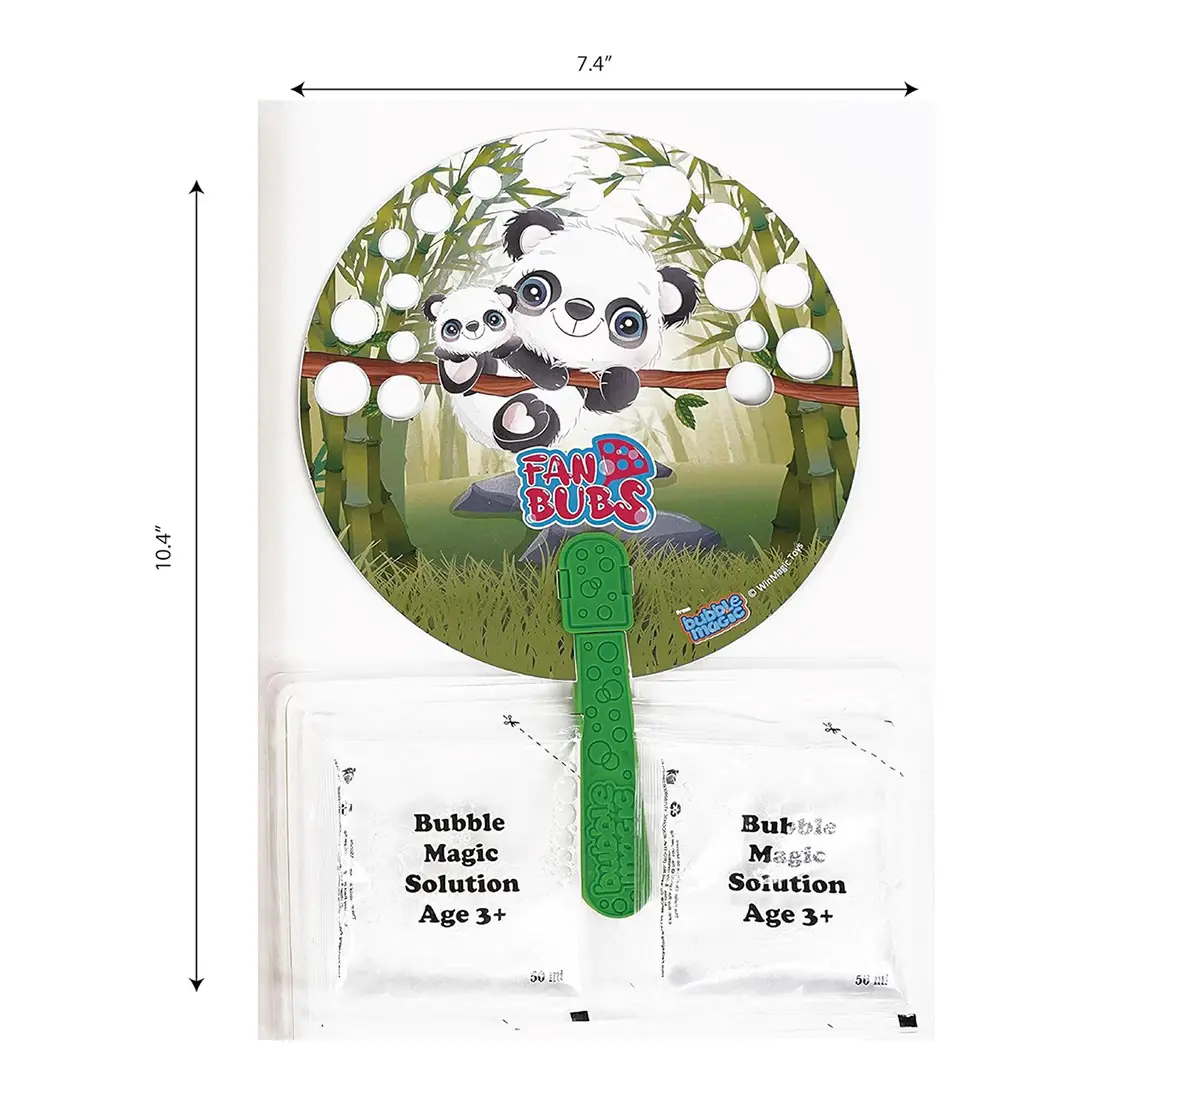 Bubble Magic Fan Bubs Panda Bubble Solution For Kids of Age 3Y+, Multicolour